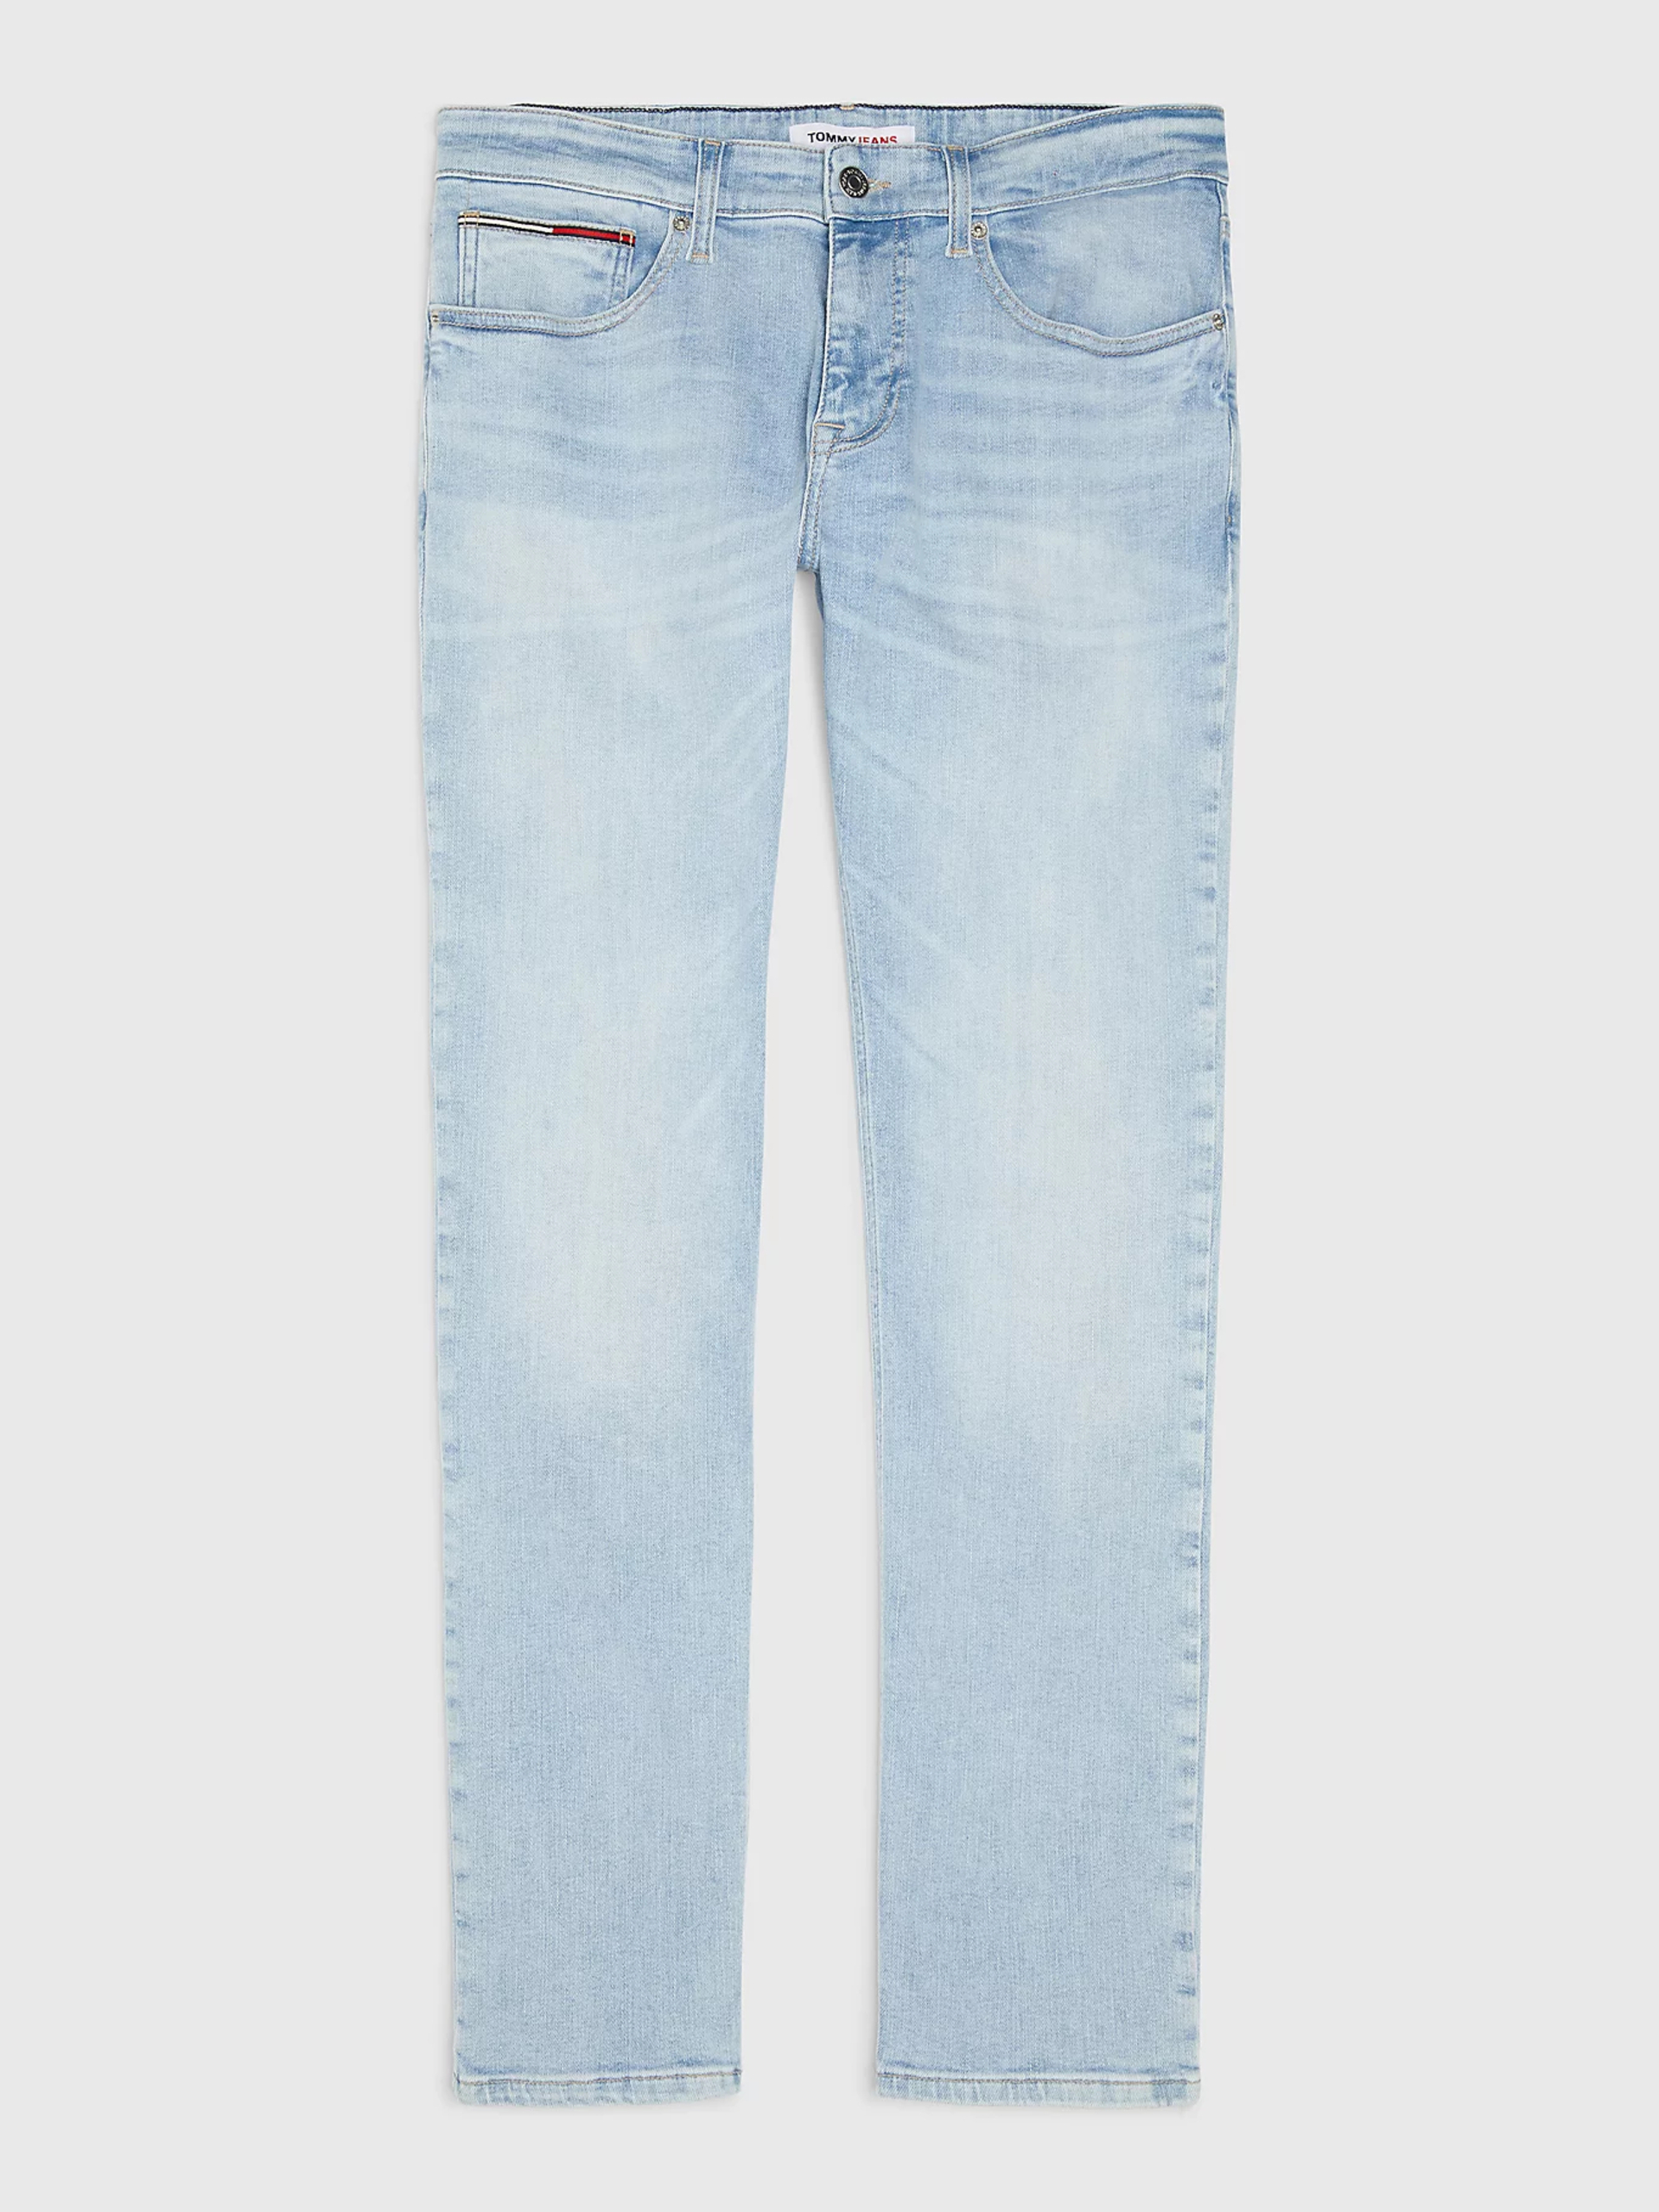 Tommy Jeans pánské světle modré džíny SCANTON  - 31/32 (1AB)